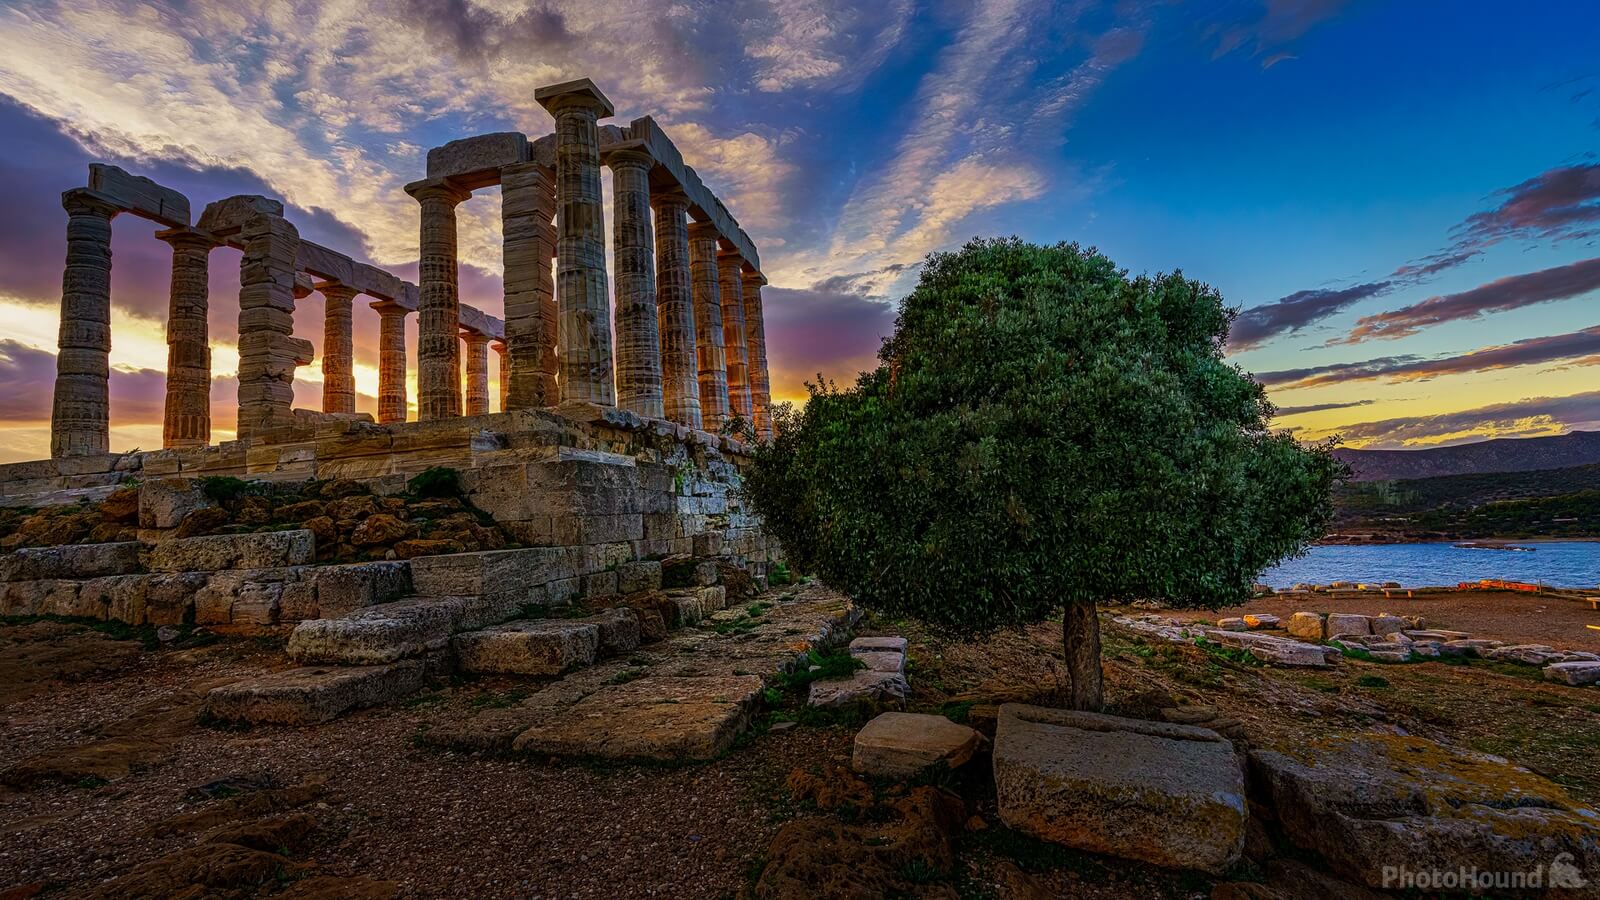 Image of Temple of Poseidon - Sounion by Charalampos Kiakotos